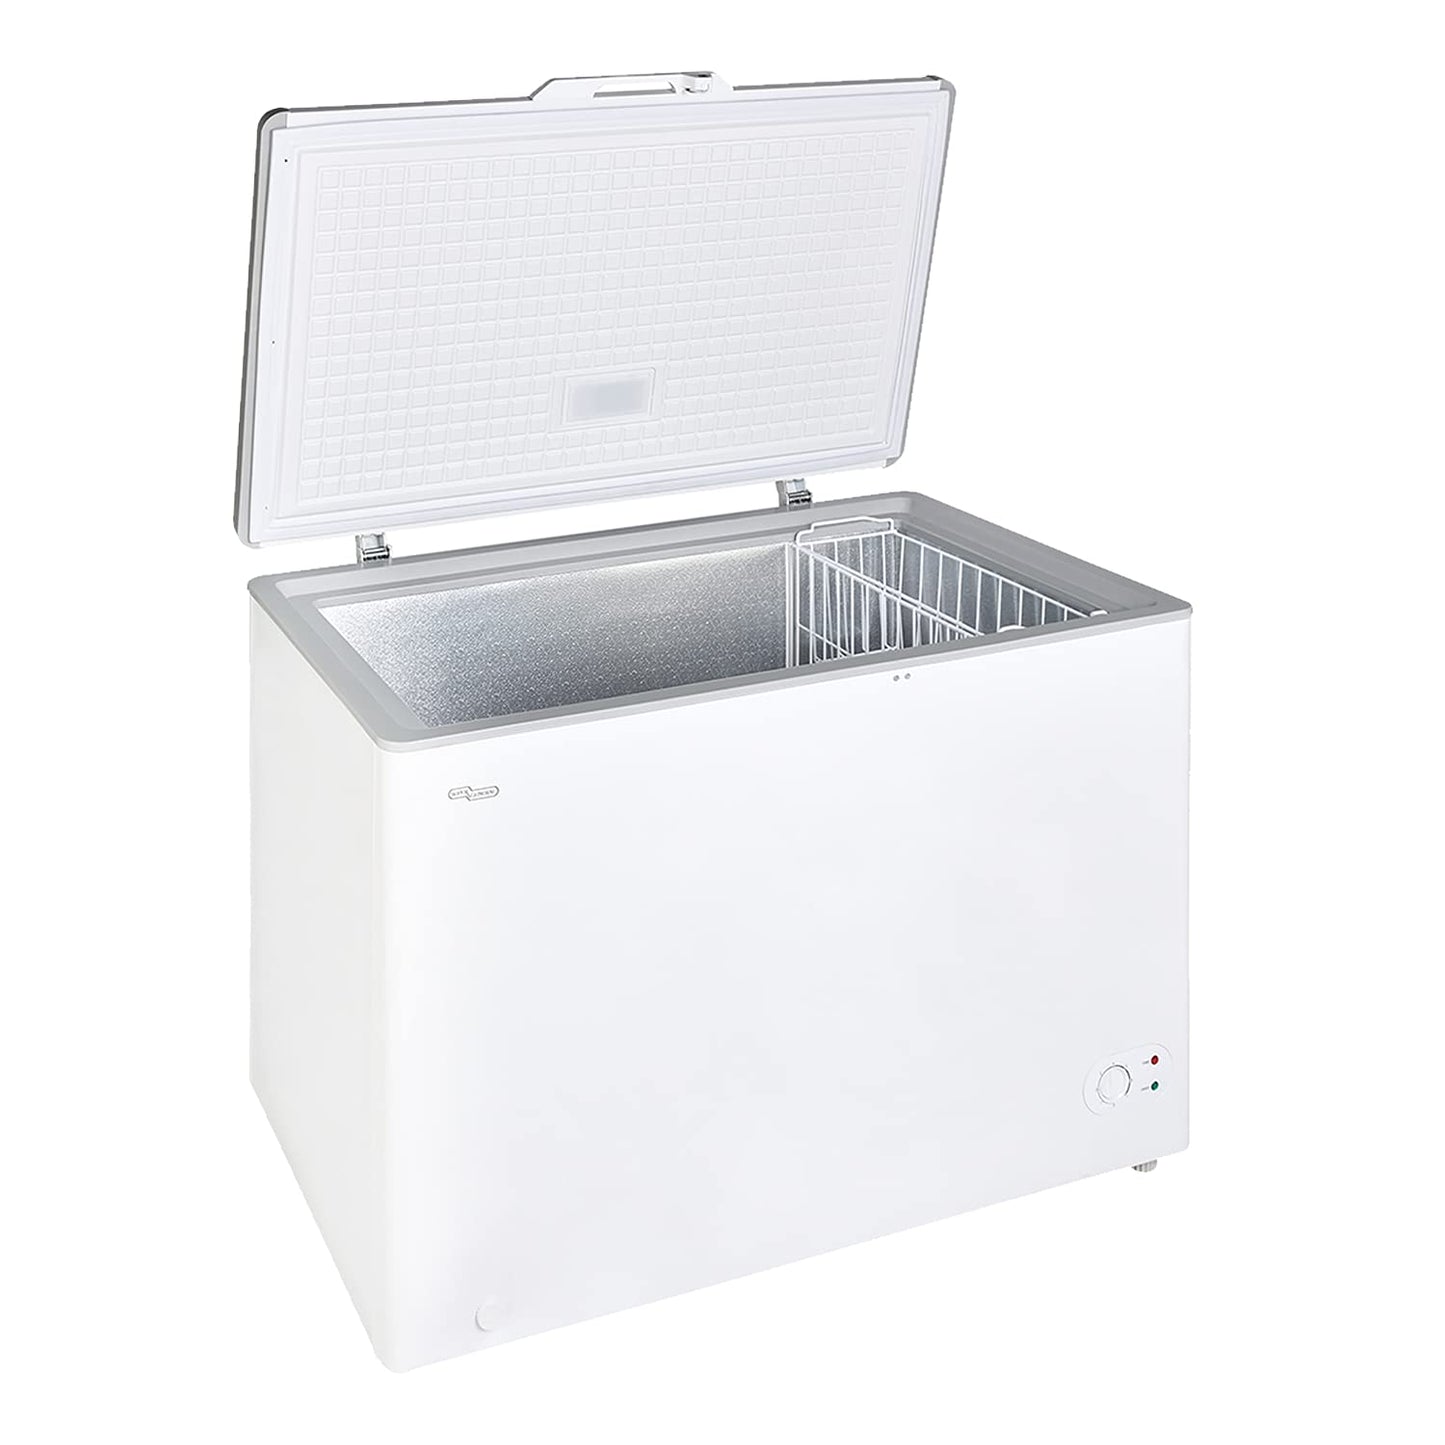 Super General Chest-Freezer 350 Liter Gross Volume, SGF-344-H, White, Rectangular Deep-Freezer with Storage-Basket, Lock & Key, Wheels, 112 x 68.8 x 83.5 cm, 1 Year Warranty